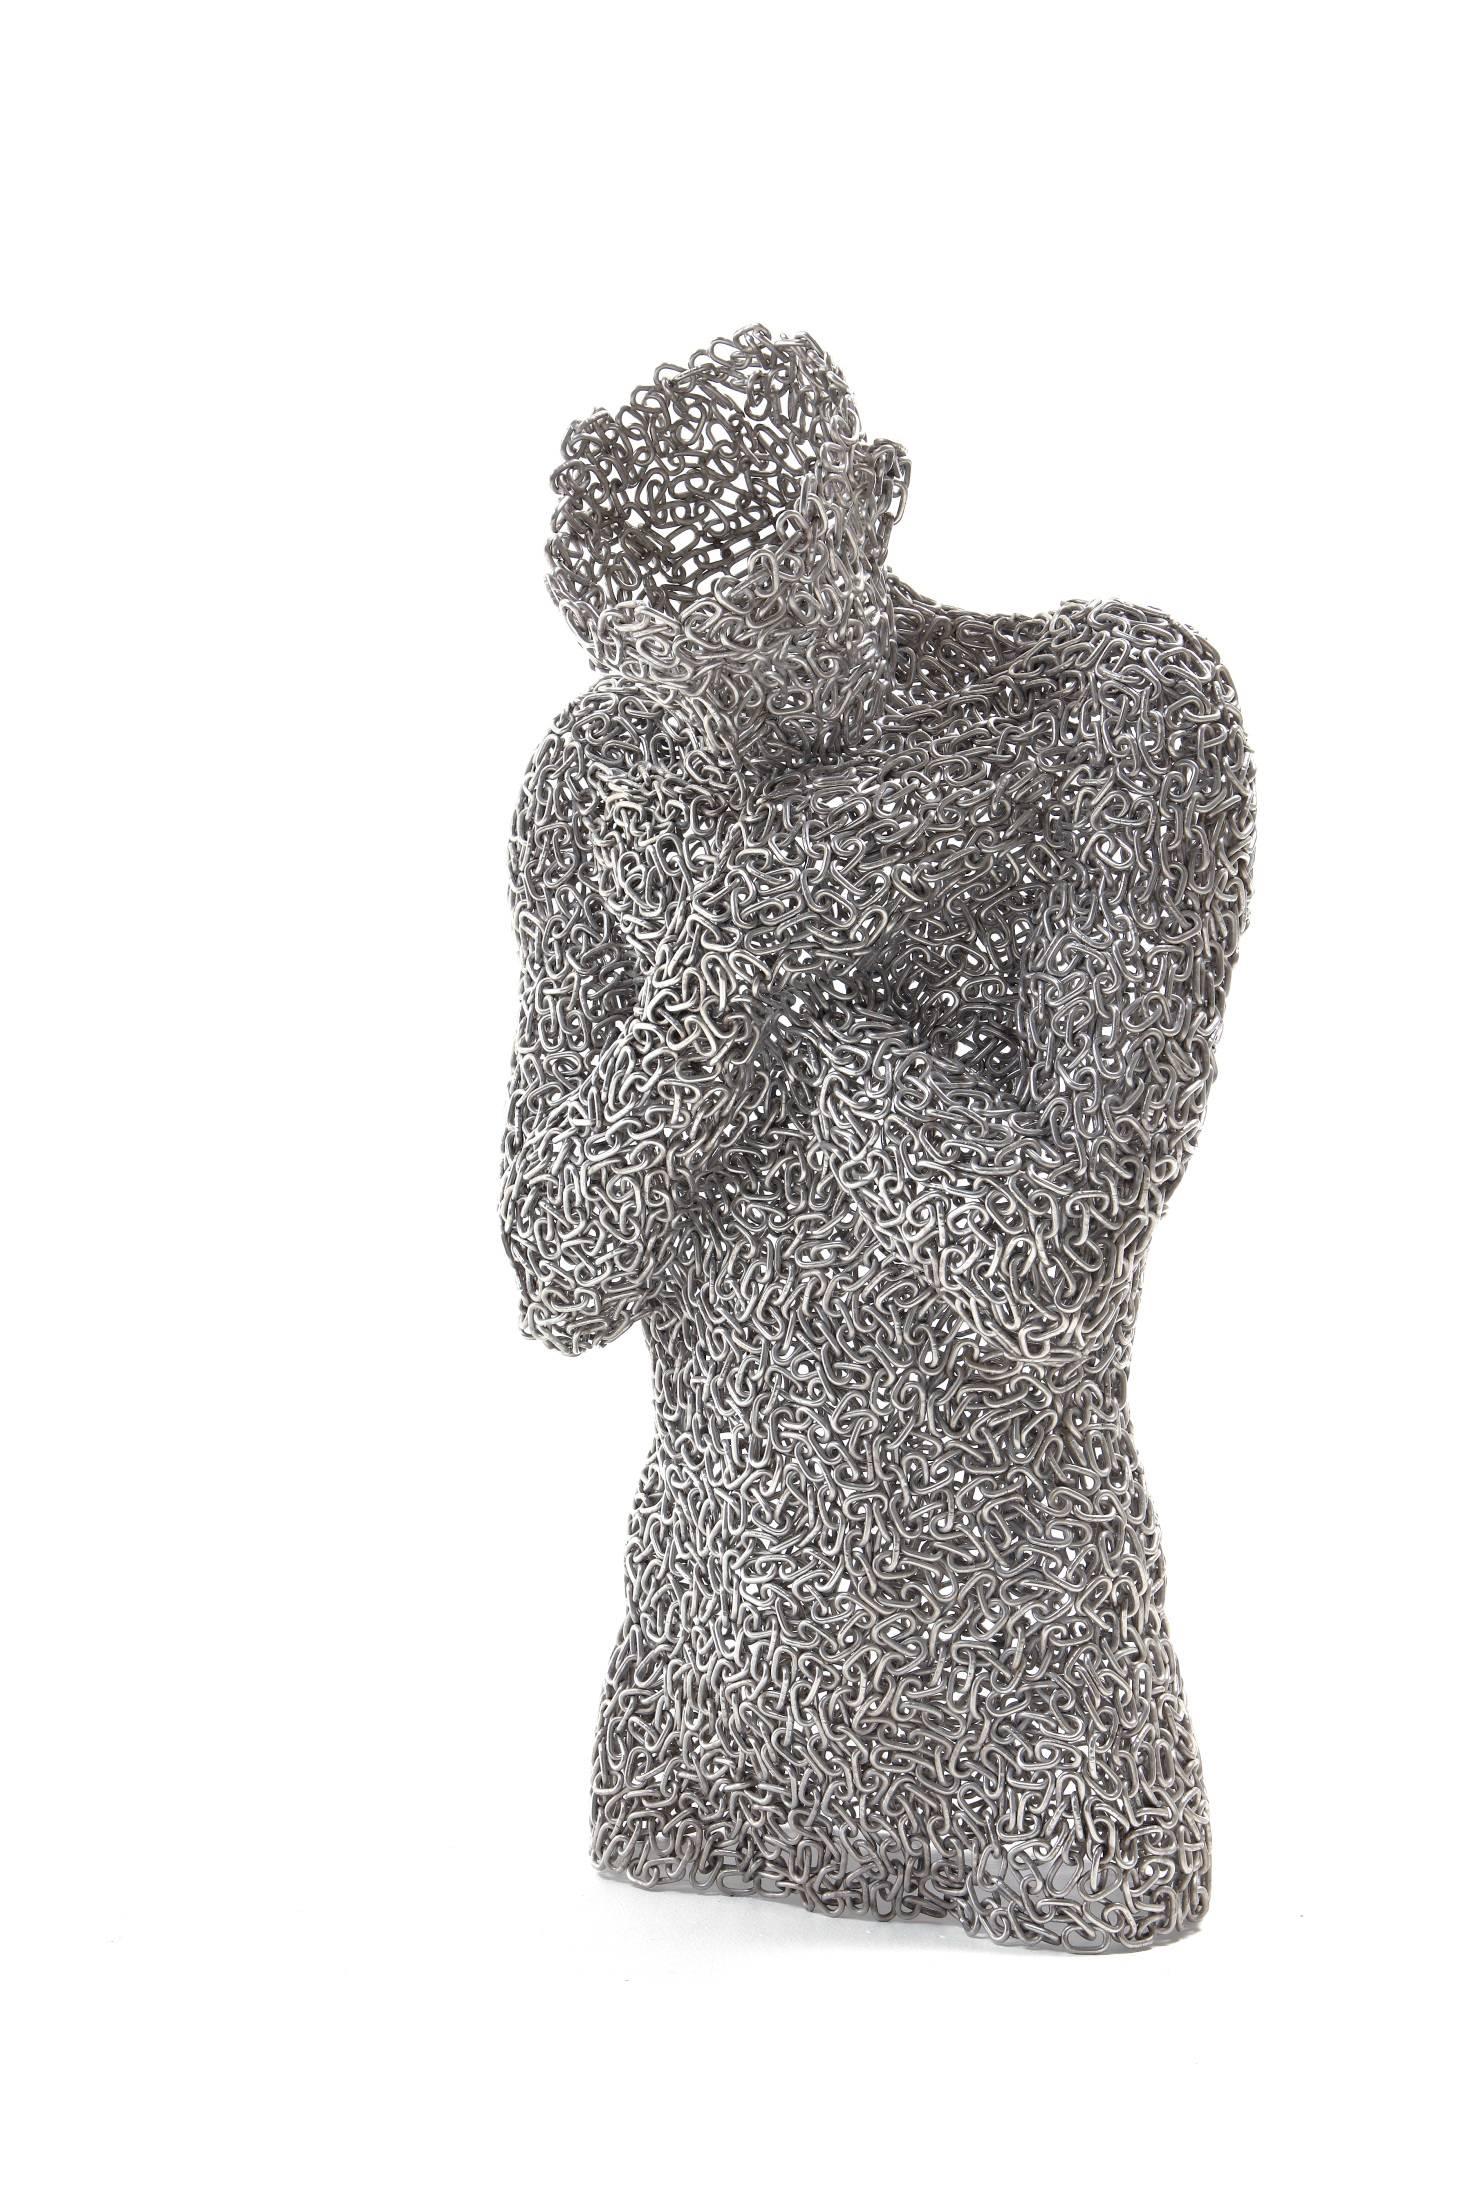 Seo Young Deok Nude Sculpture - Anguish 21